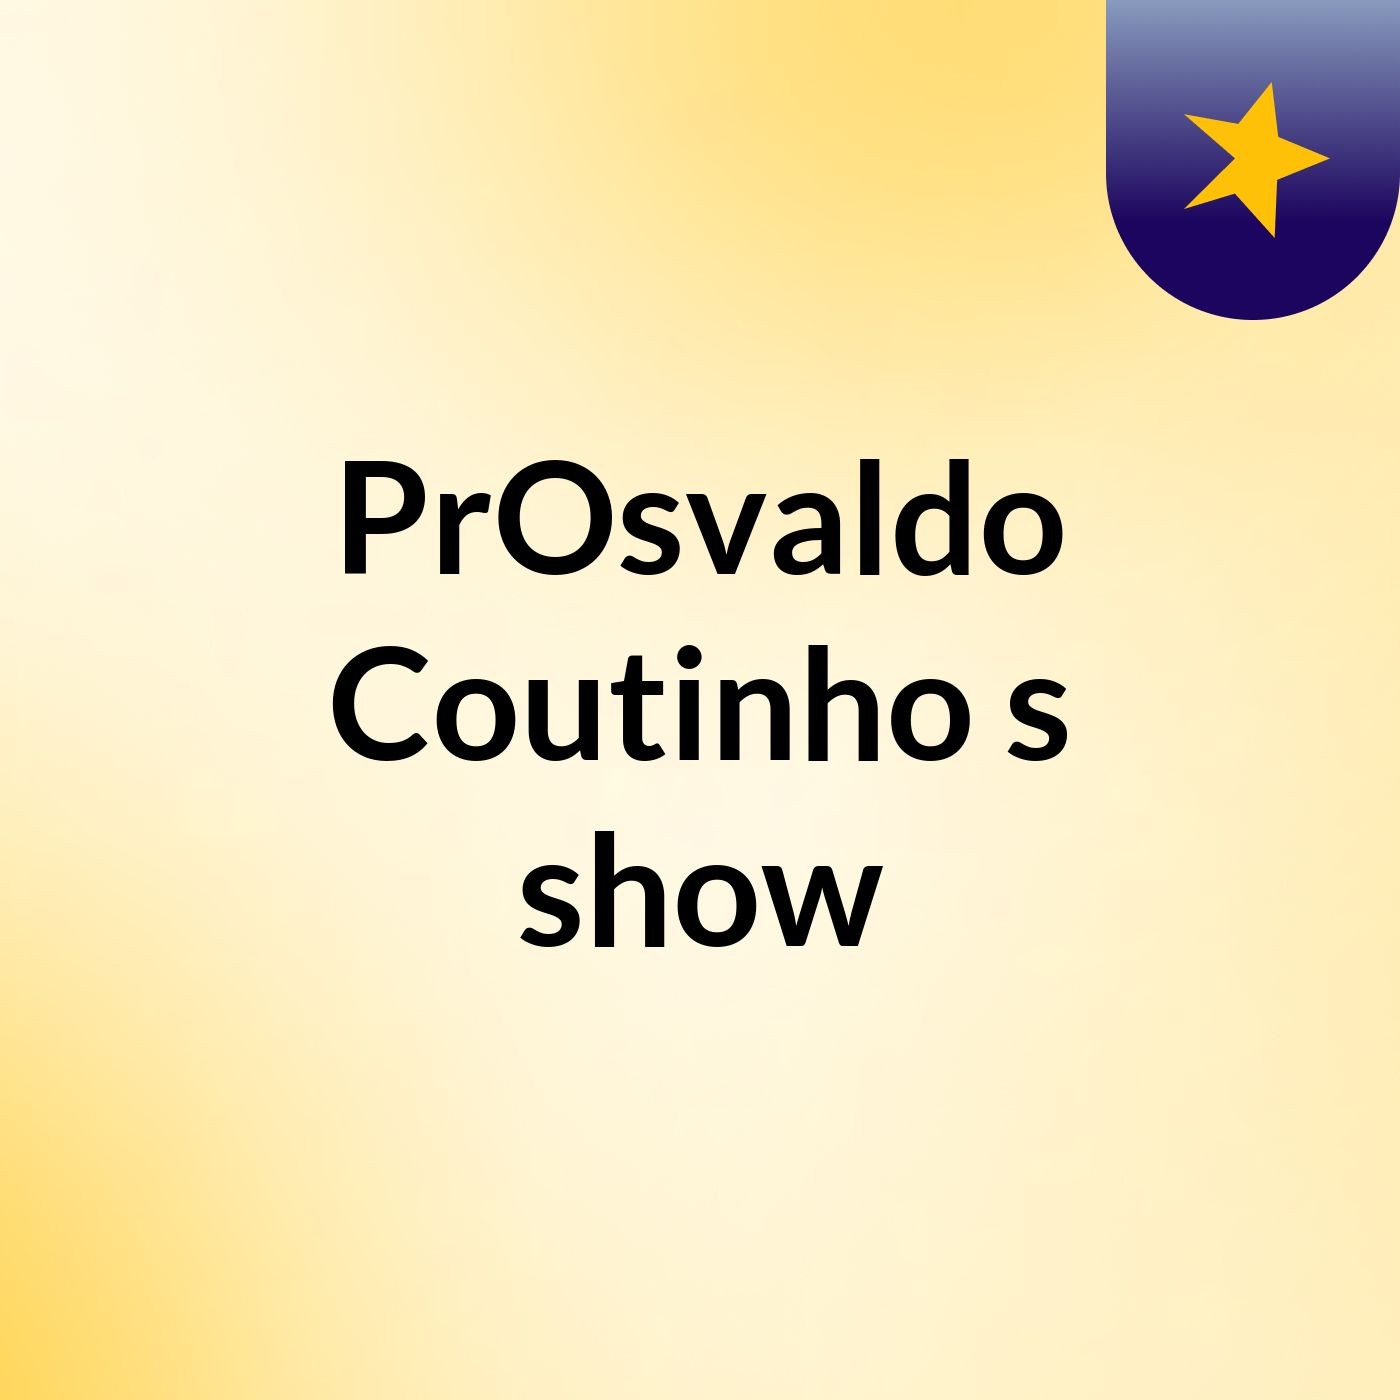 PrOsvaldo Coutinho's show